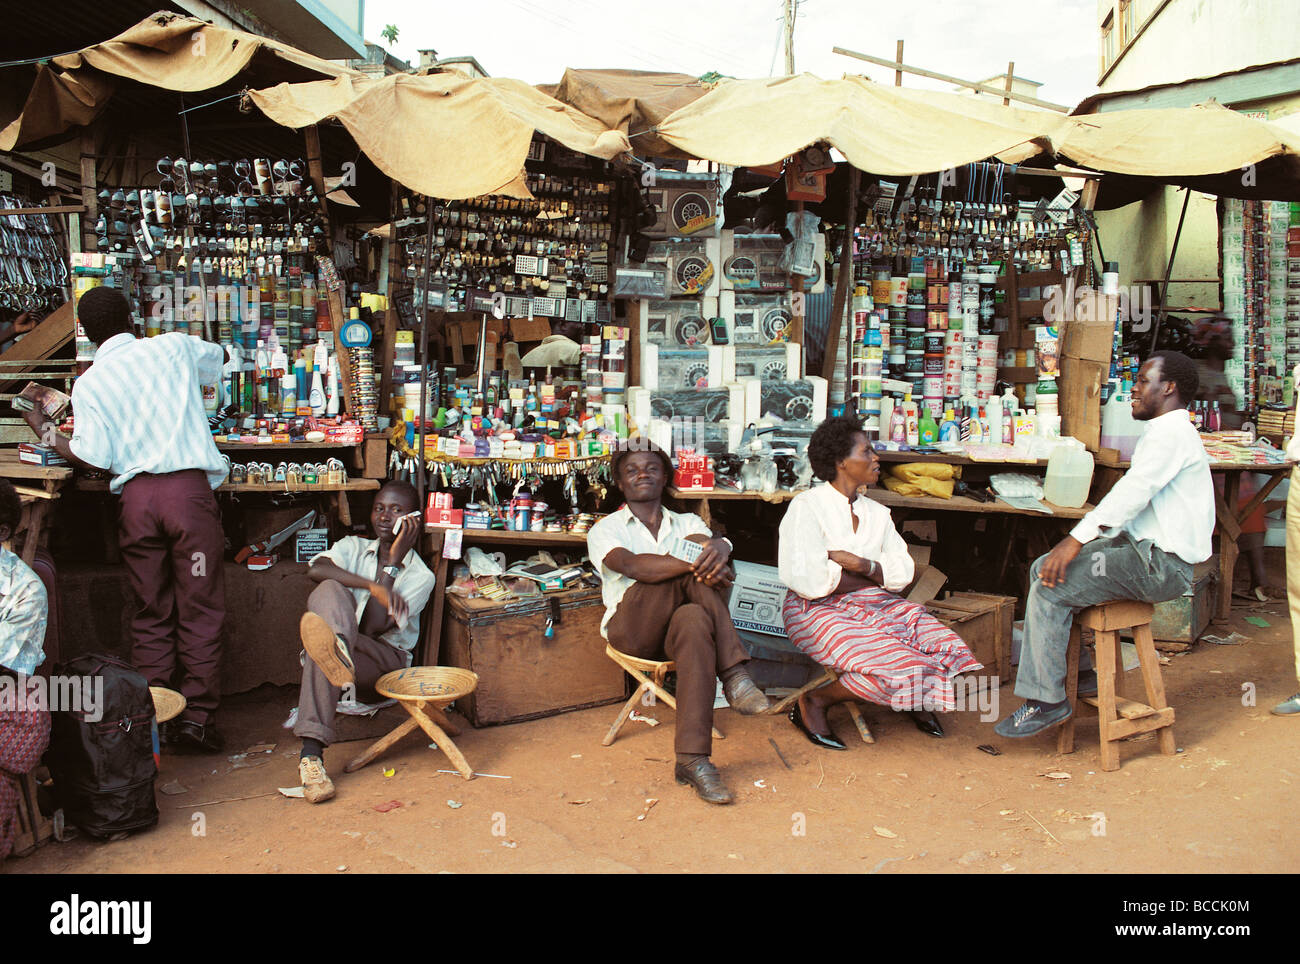 Vous pourrez vous détendre assis commerçants attendent les clients at a market stall présentation de produits de l'Afrique de l'Est Ouganda Kampala Banque D'Images